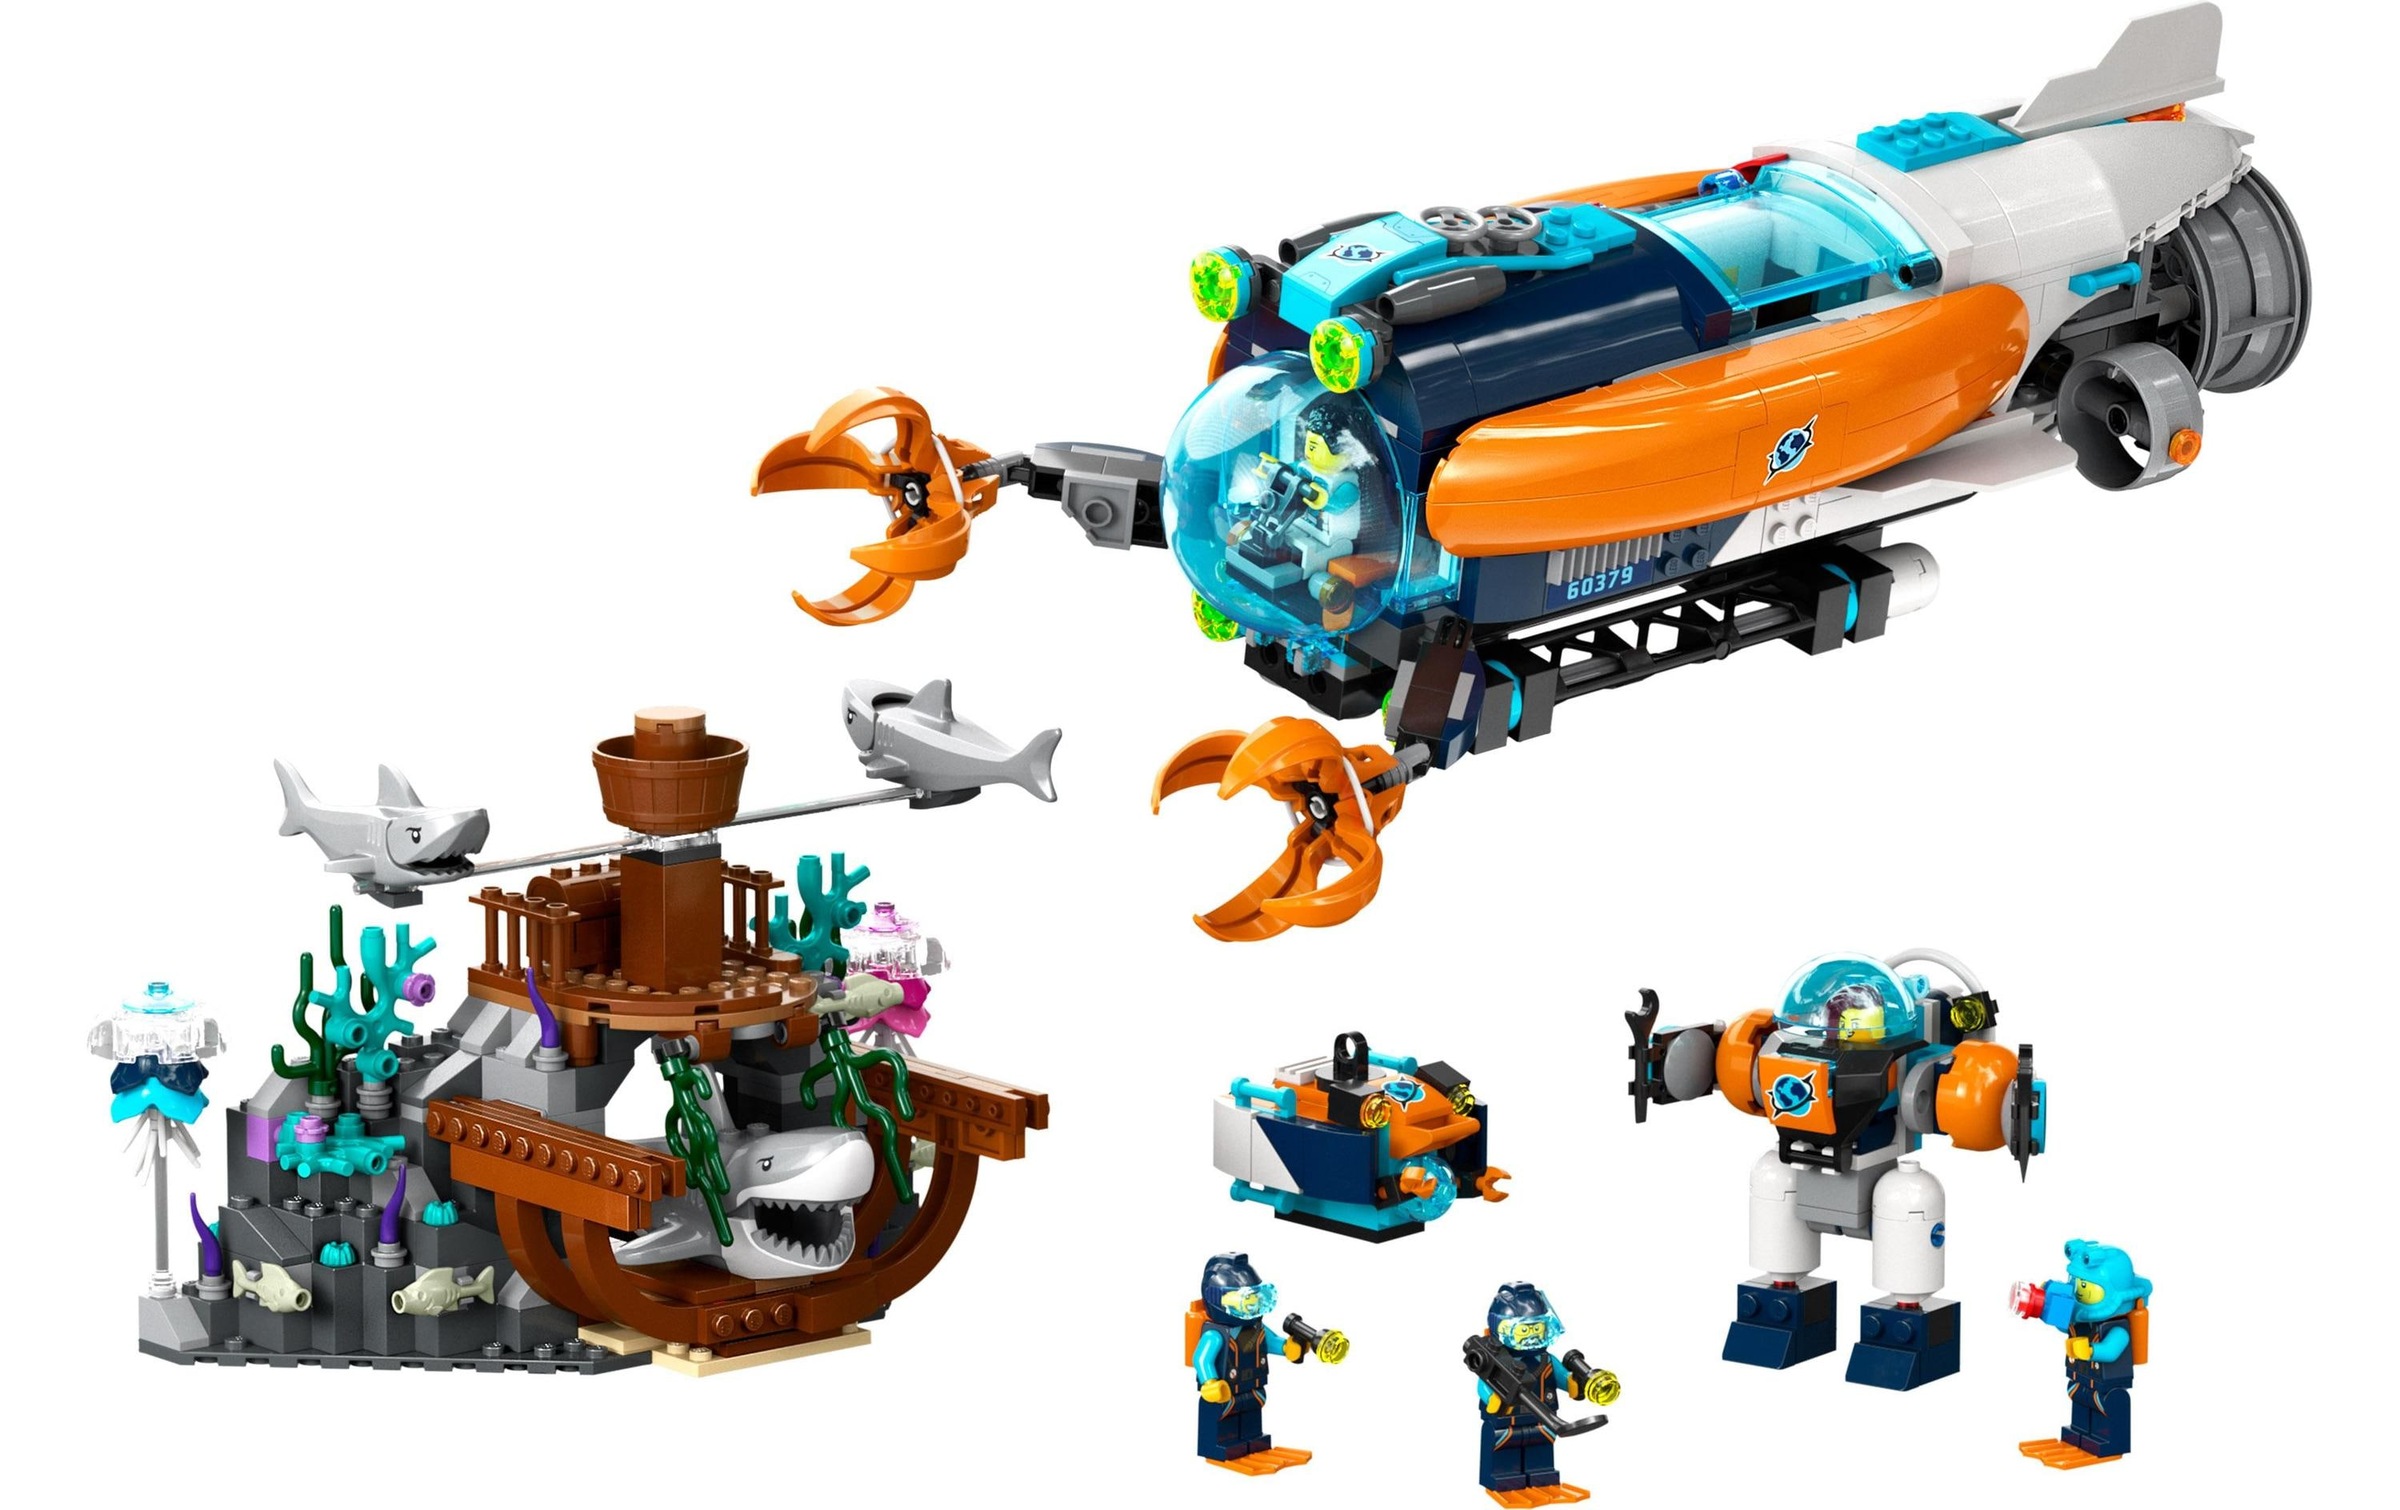 LEGO® Spielbausteine »City Forscher-U-Boot 60379«, (842 St.)